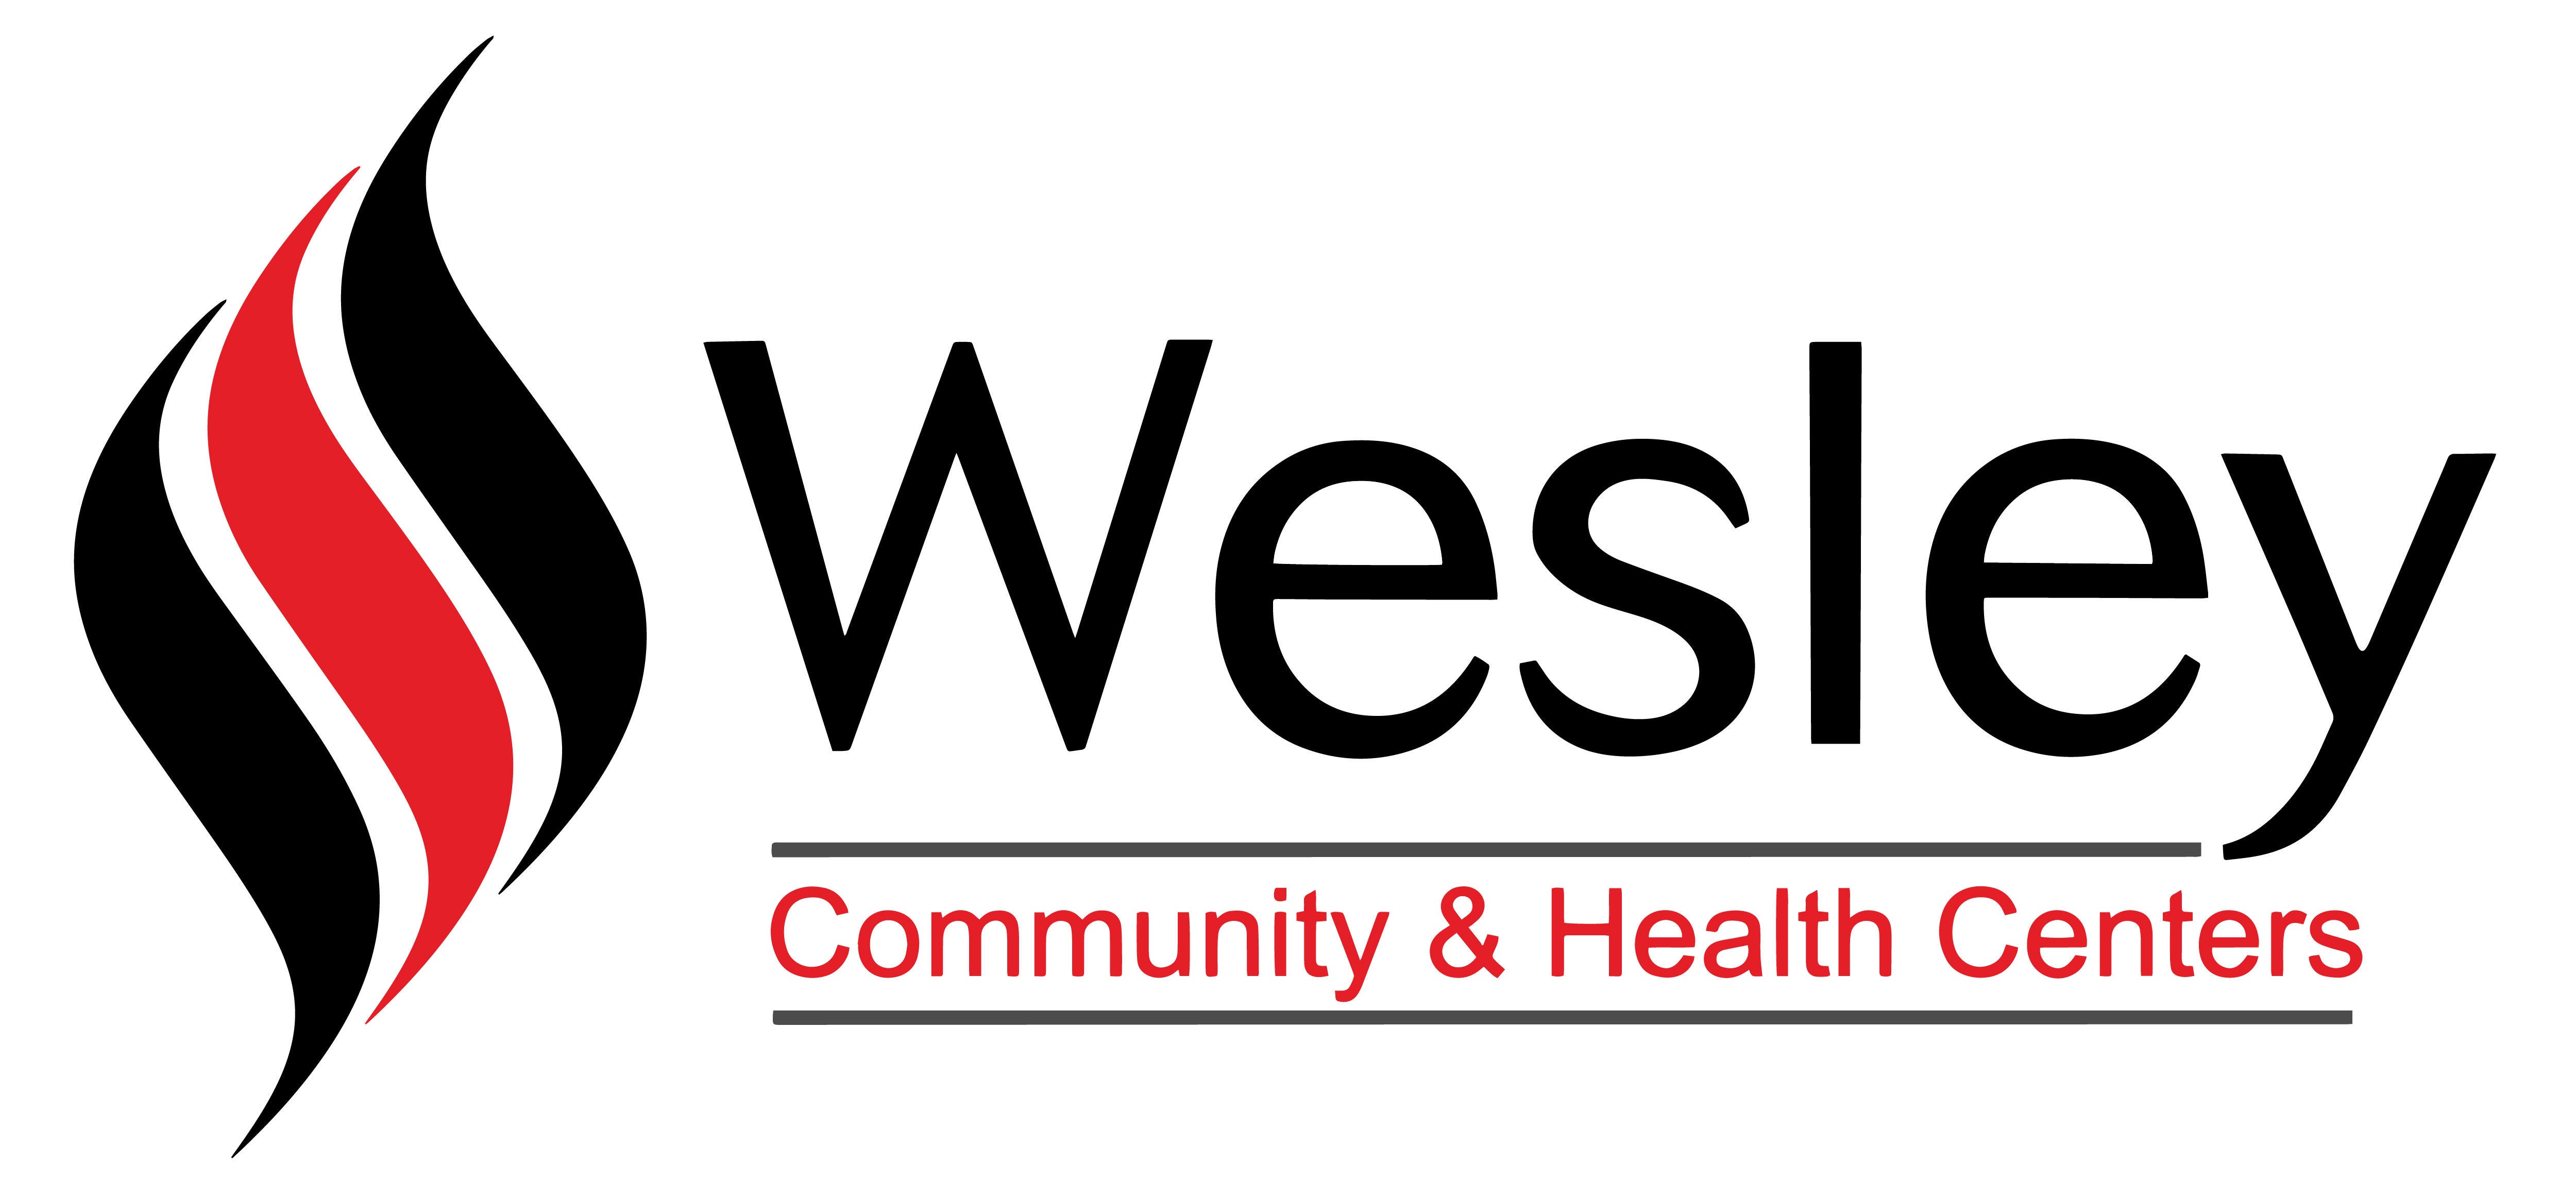 Wesley Logo